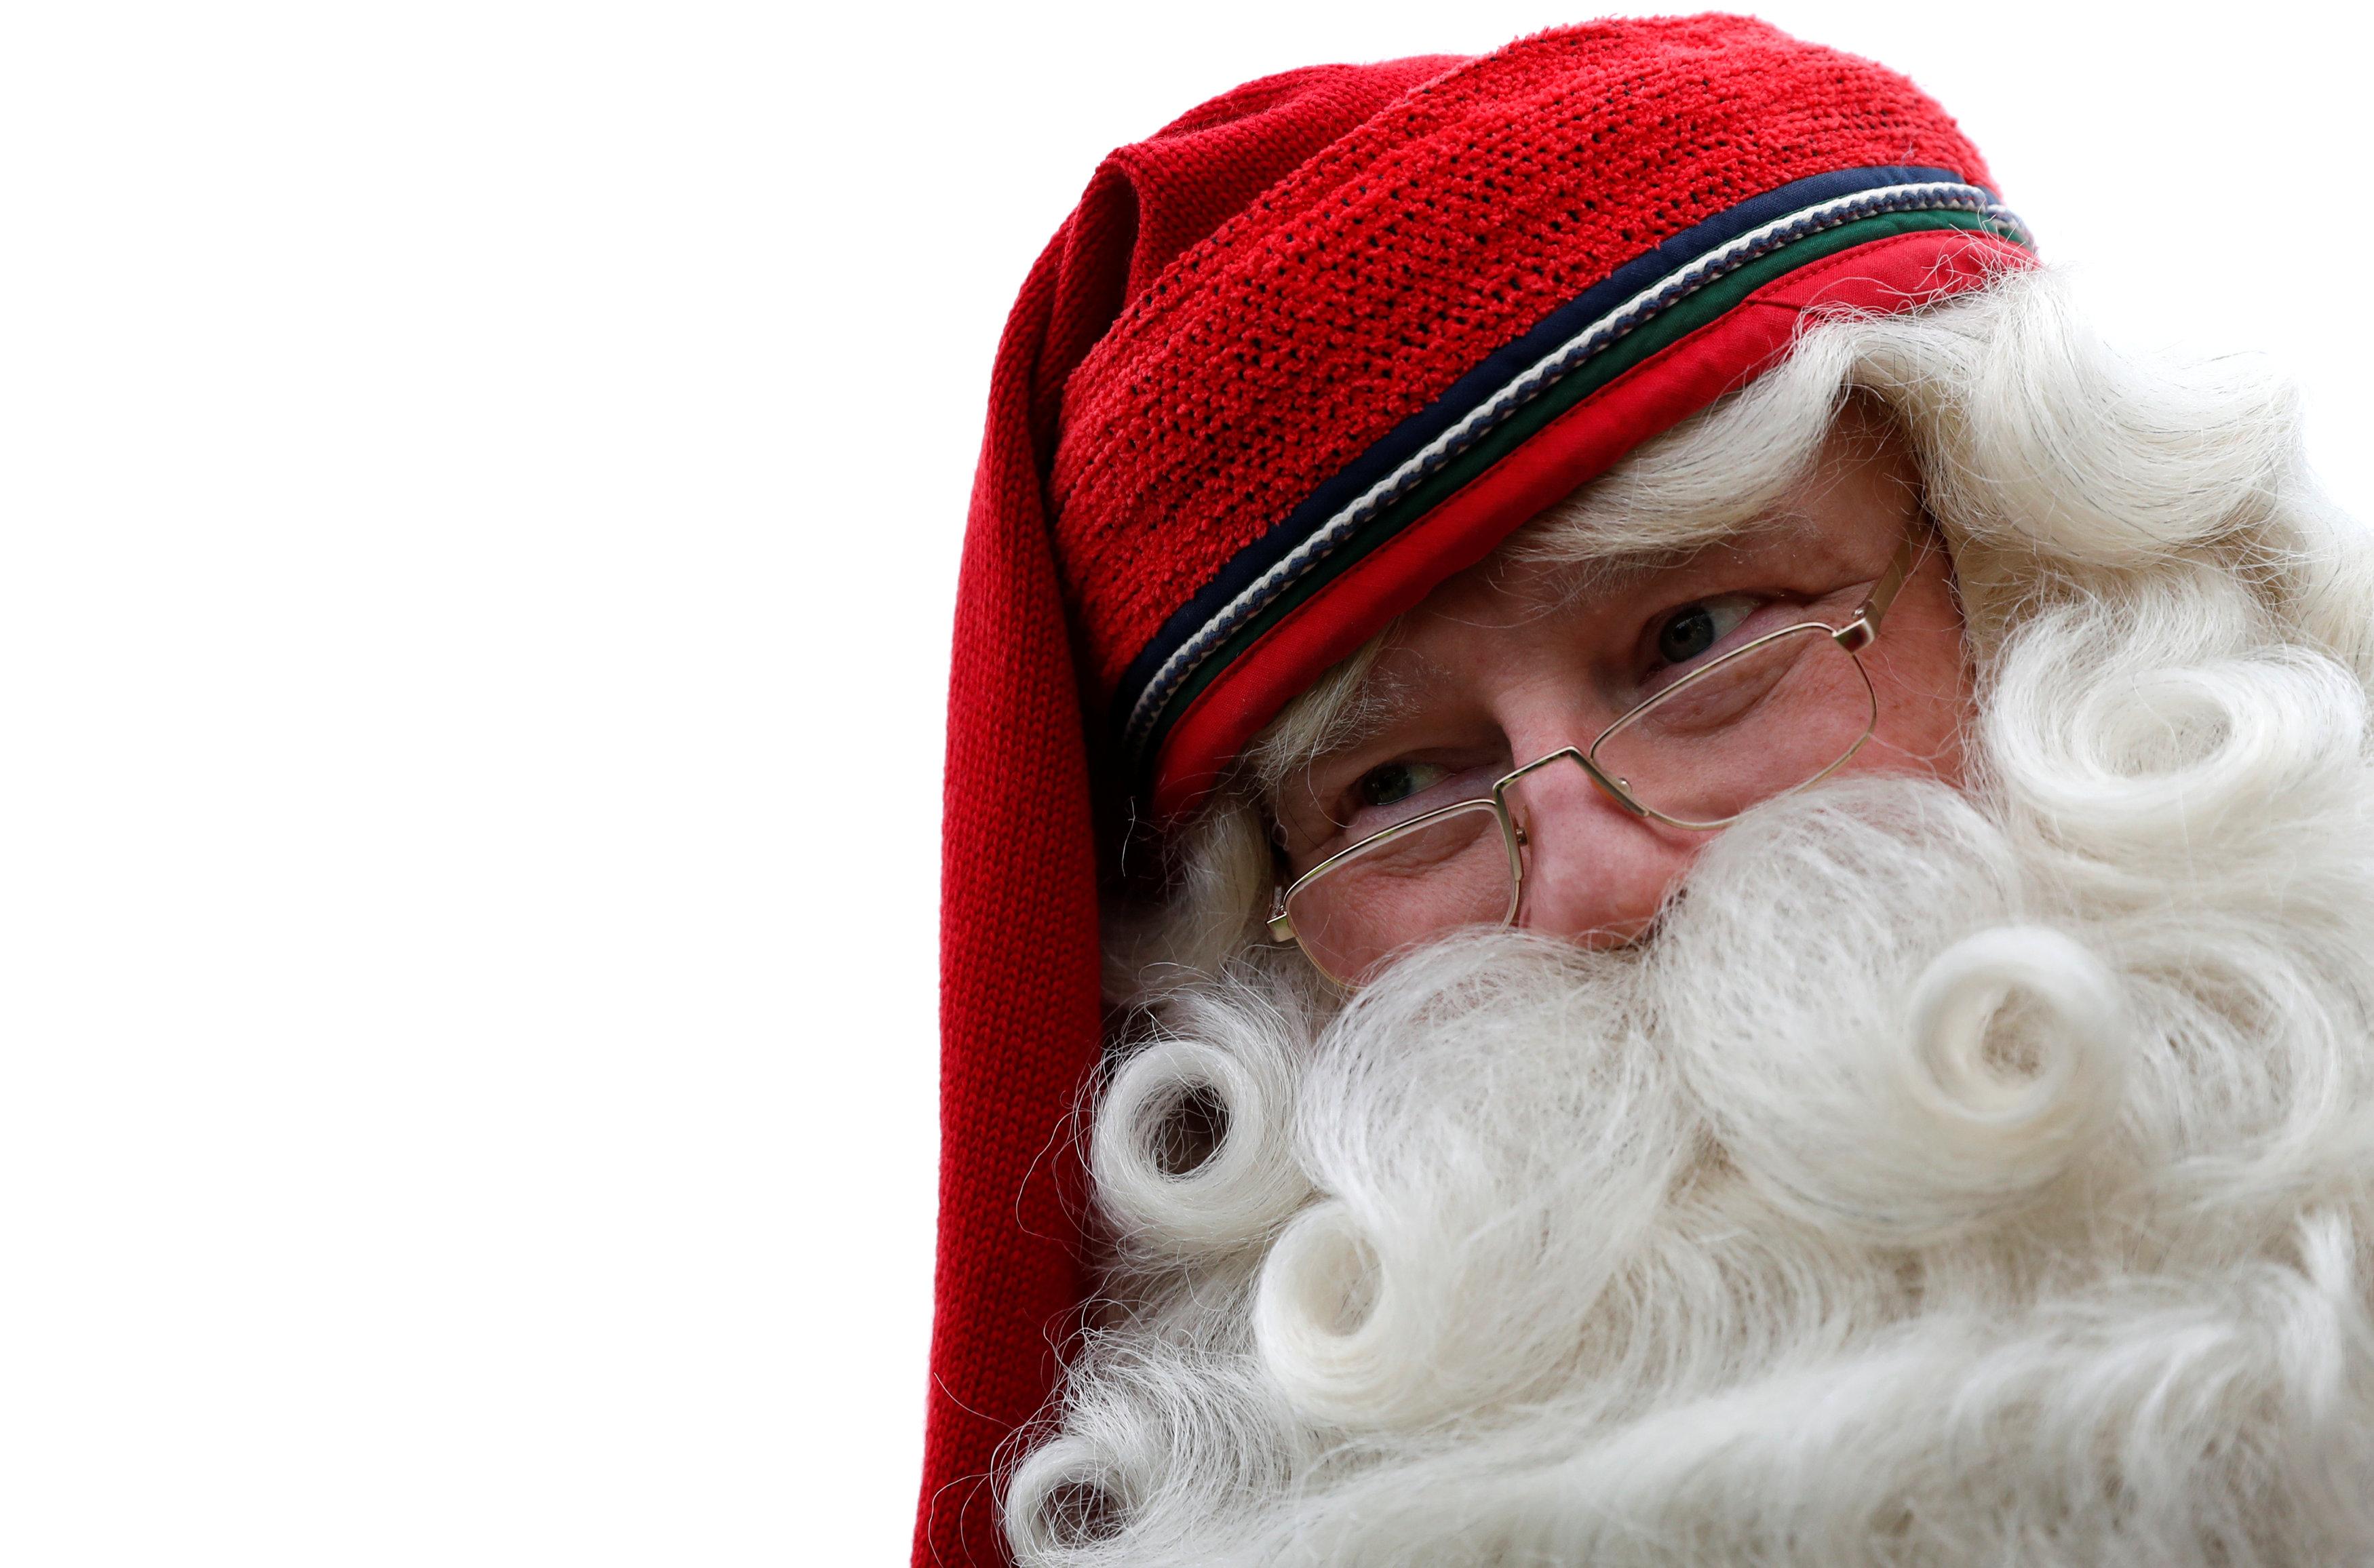 Cruel obispo italiano le dijo a los niños que Papá Noel es un personaje imaginario